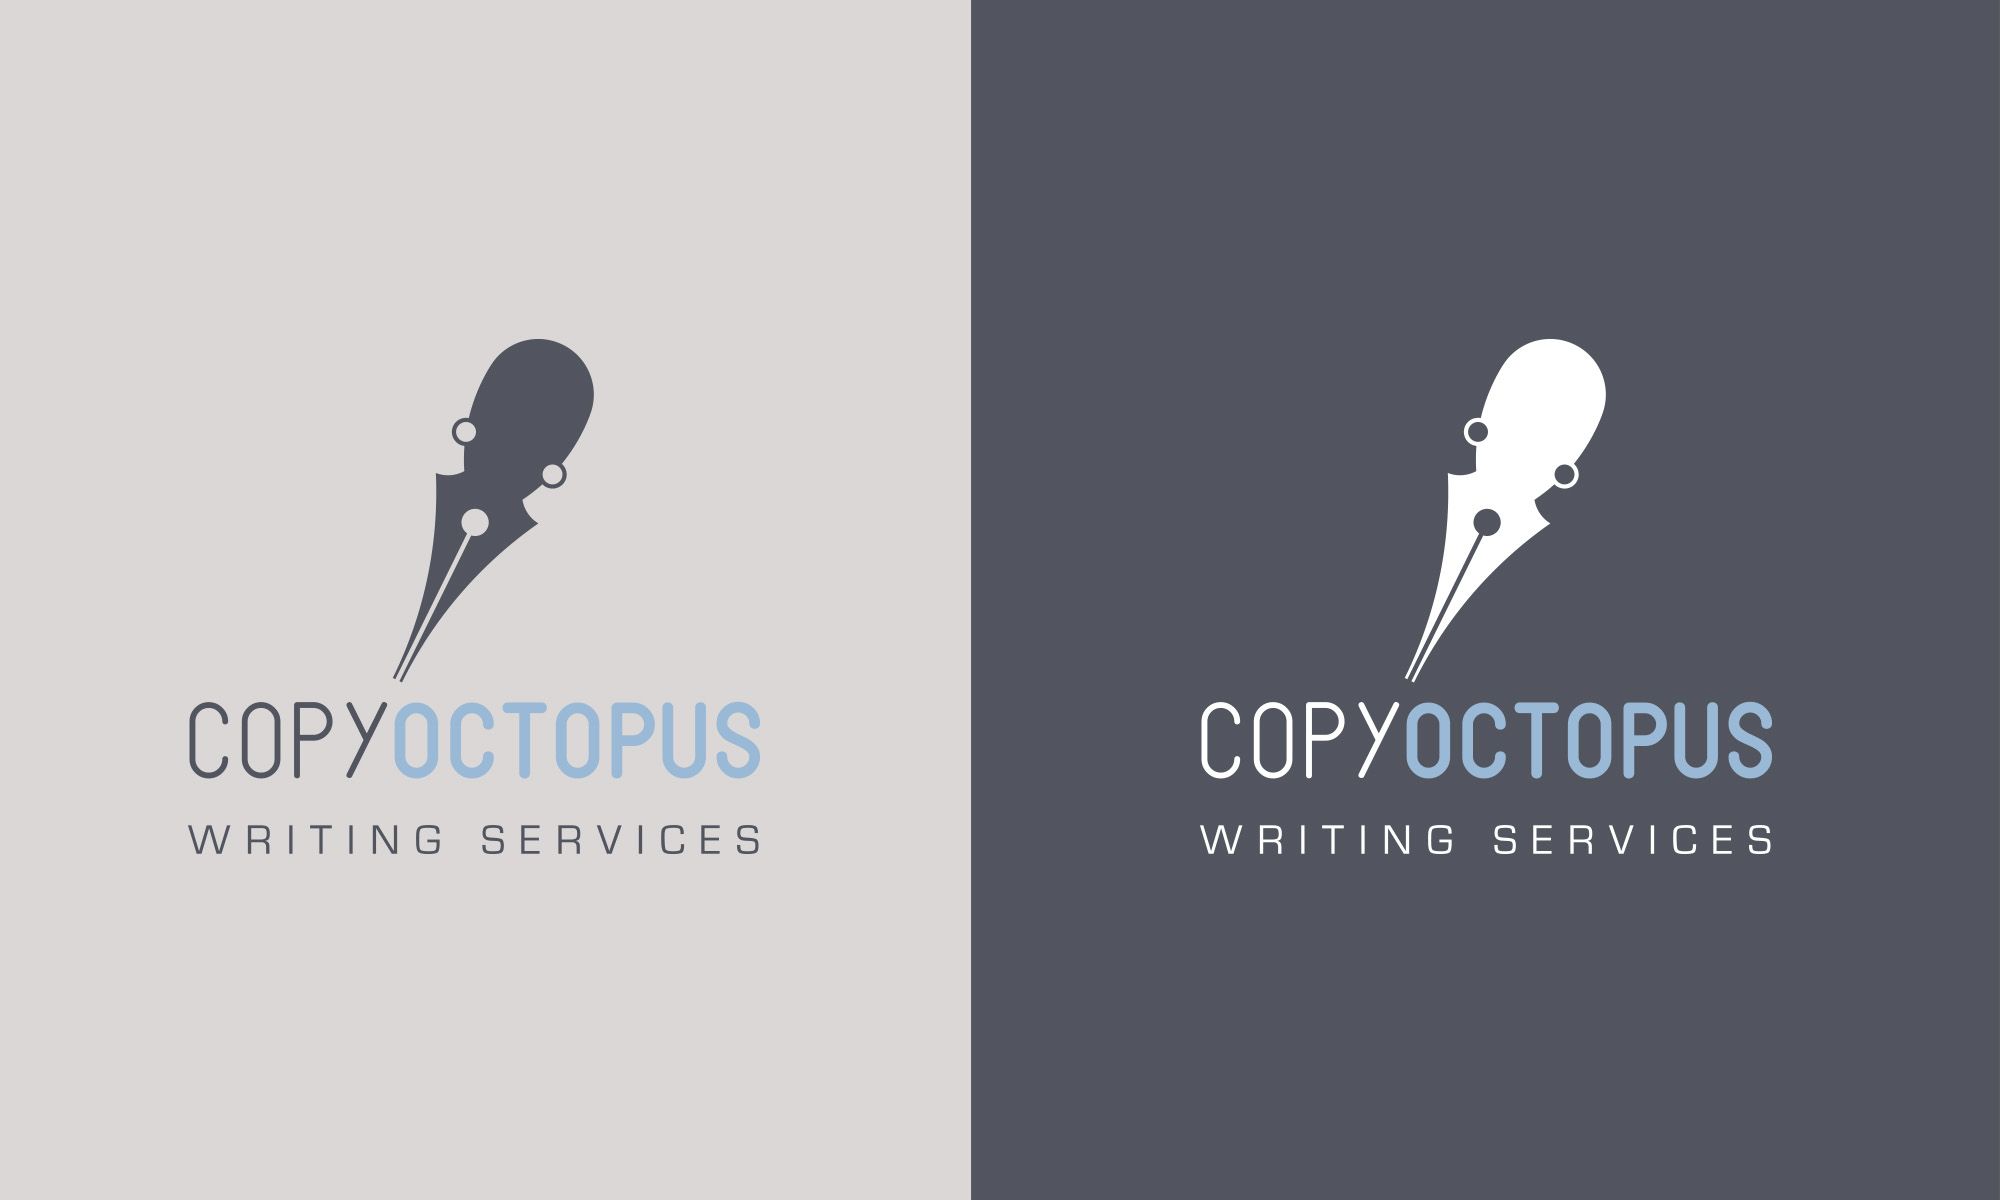 Copy Octopus logo versions